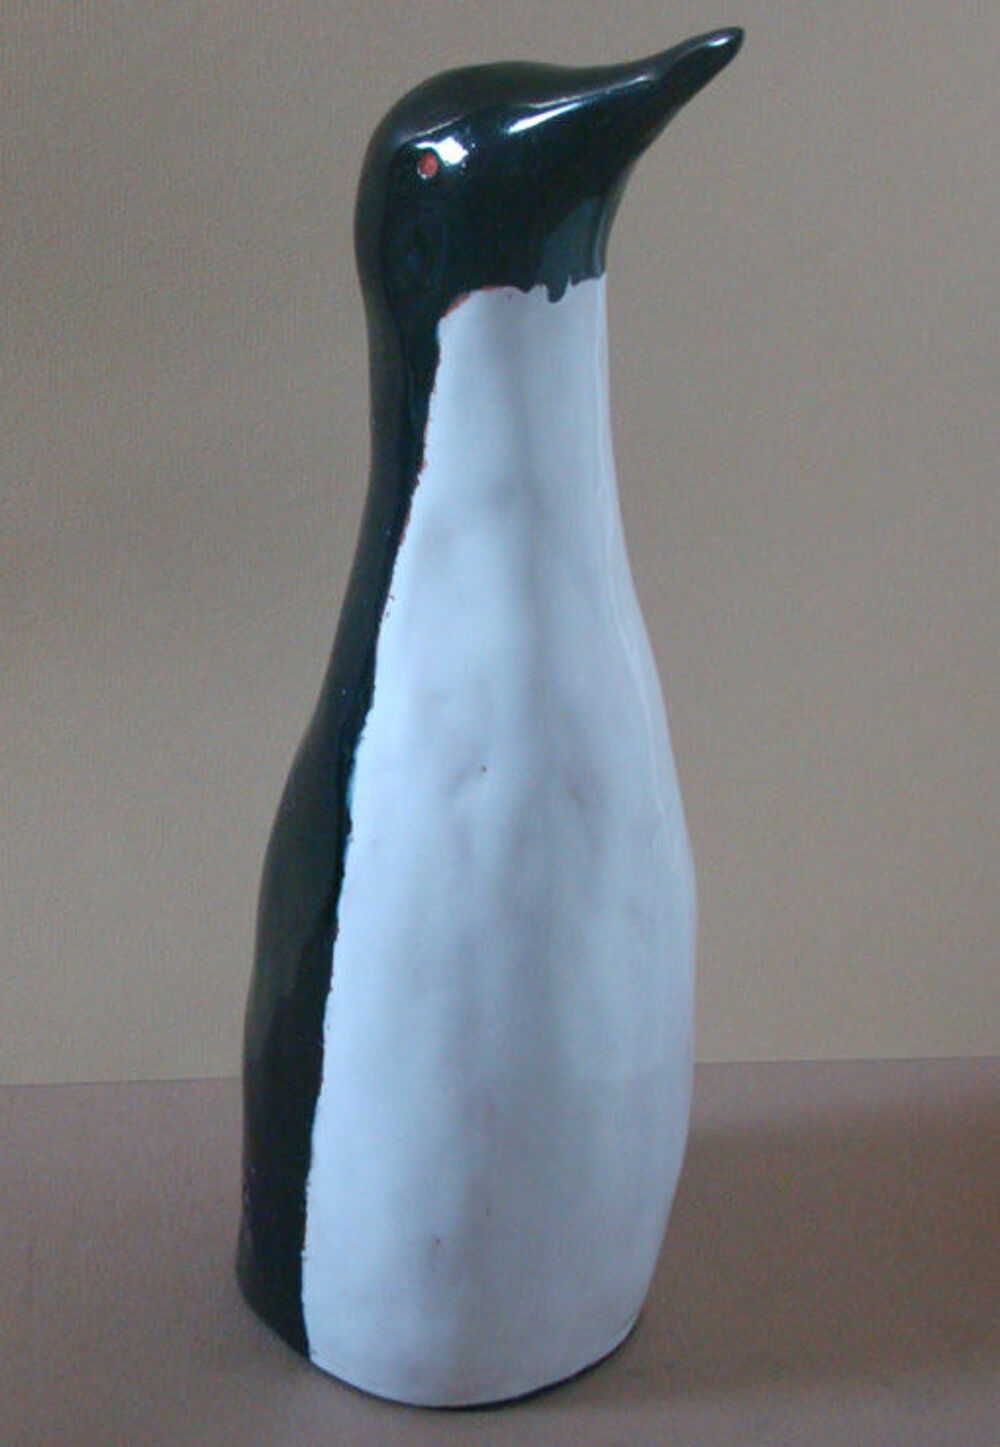 CADEAU SCULPTURE PINGOUIN (CHRISM37)
Dcoration